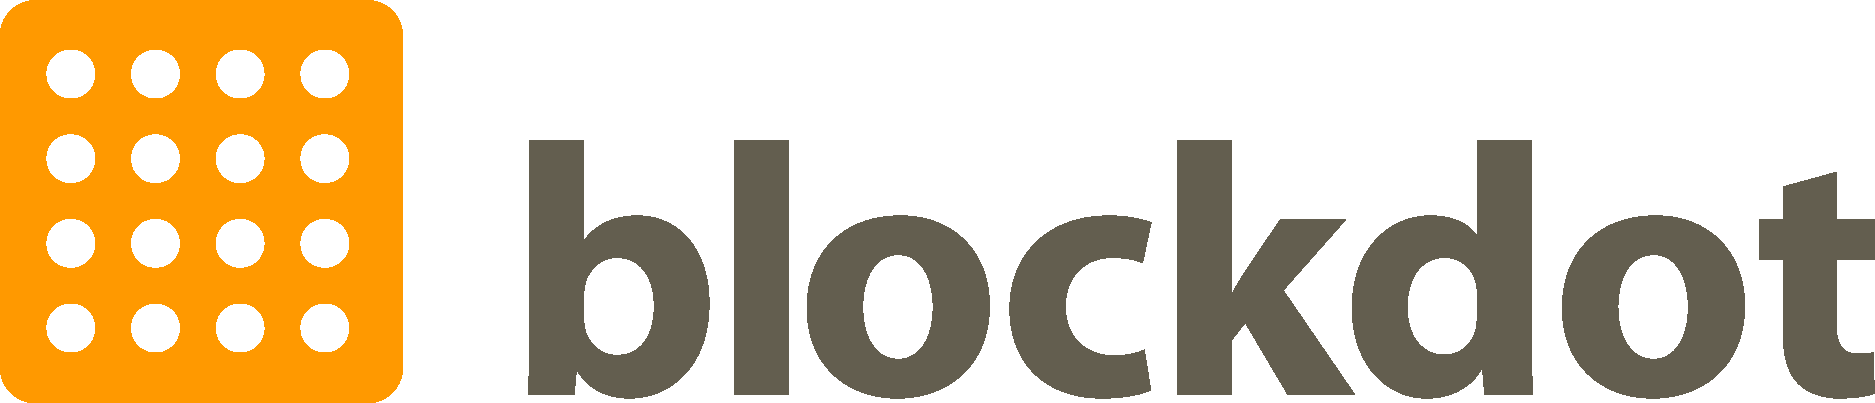 Blockdot Logo Vector